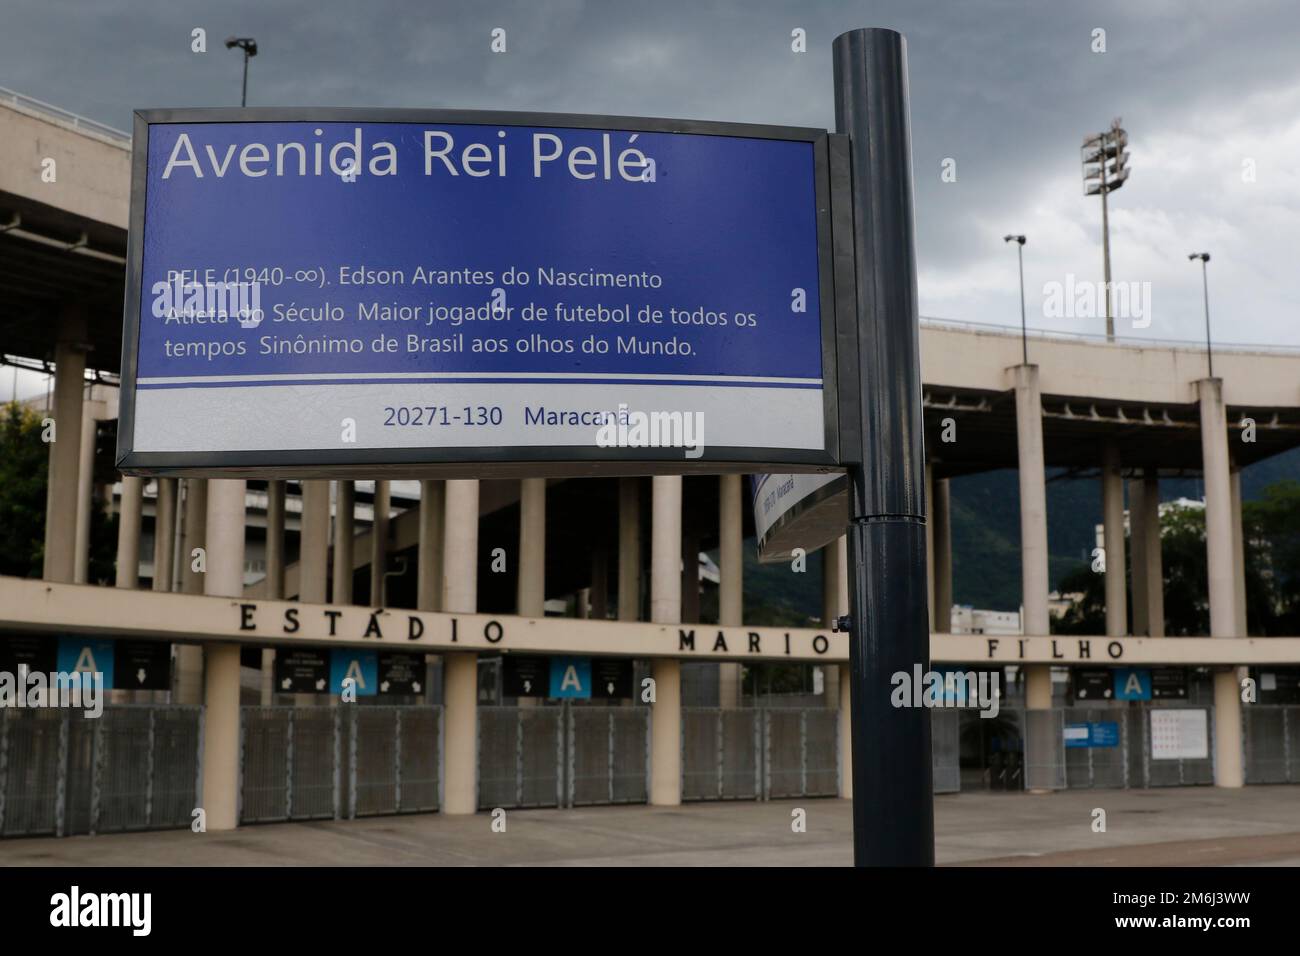 Avenue King Pelé at Macaranã Stadium, street sign. Tribute to famous brazilian soccer player Pele, Edson Arantes do Nascimento - Rio de Janeiro Brazil Stock Photo